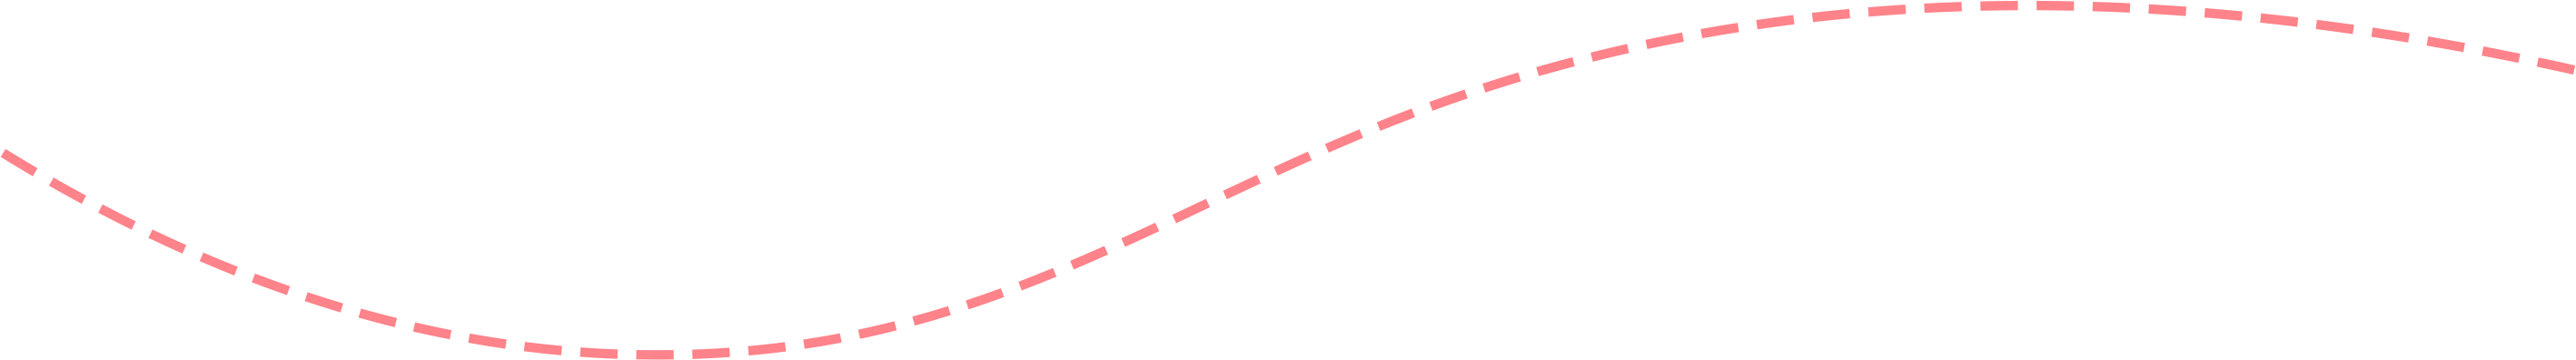 Line Vector